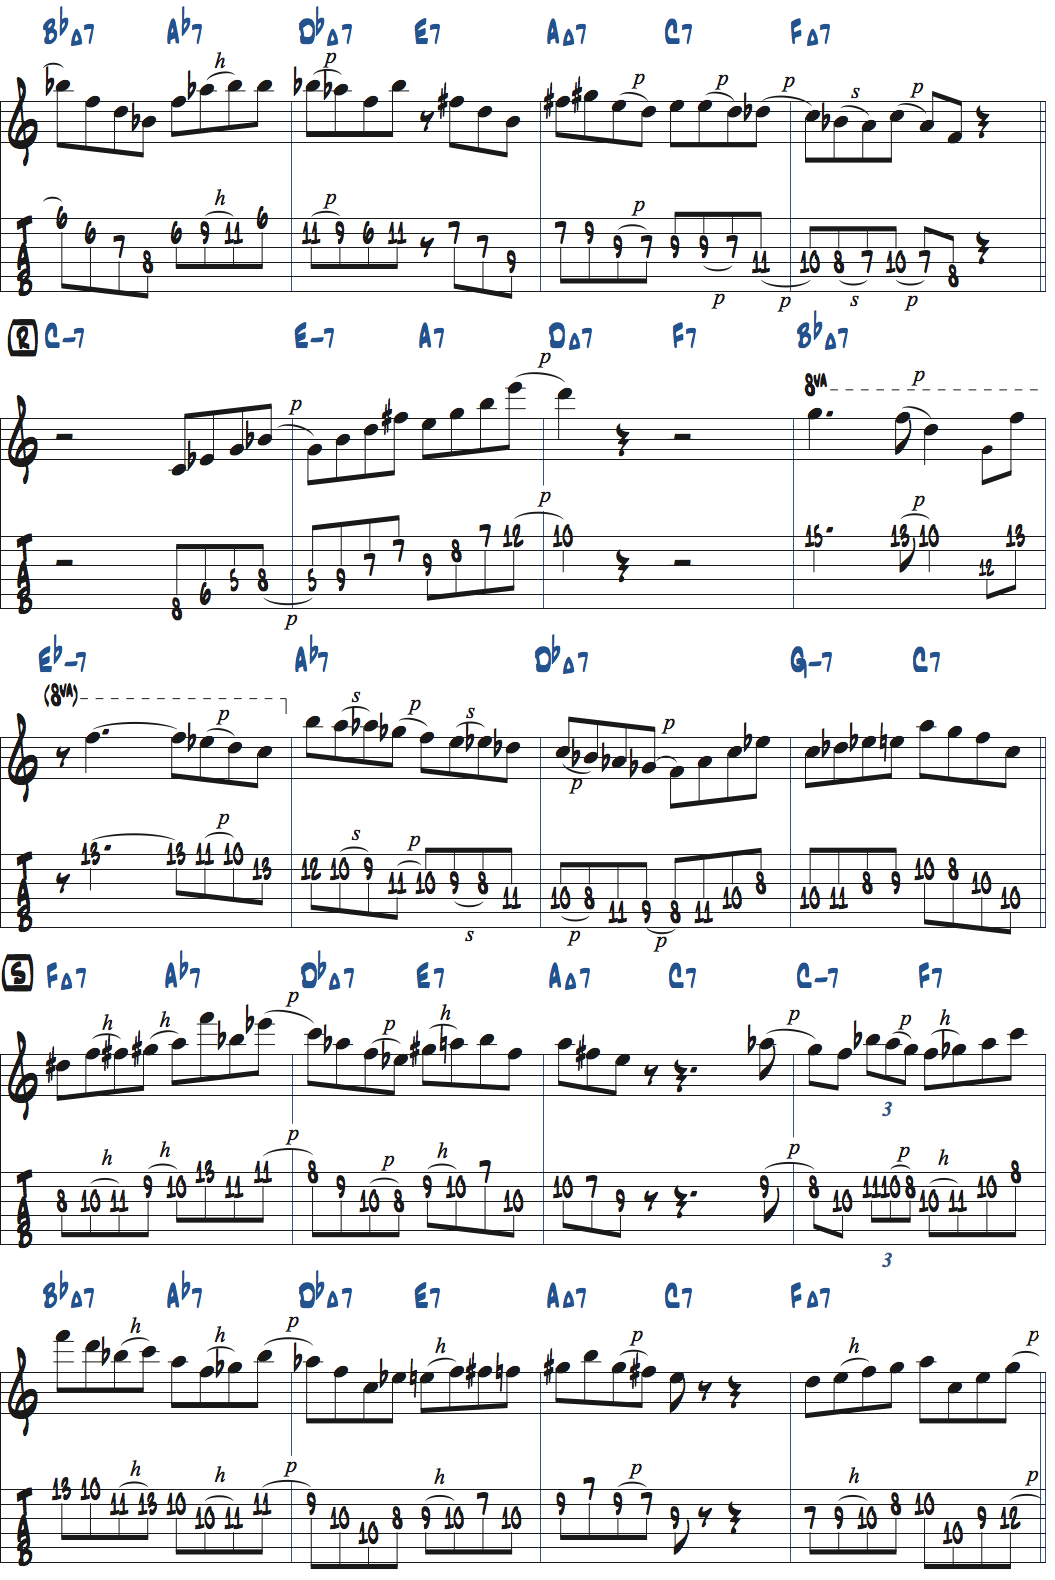 カート・ローゼンウィンケル「26-2」アドリブ5コラース目タブ譜付きギタースコア楽譜ページ2